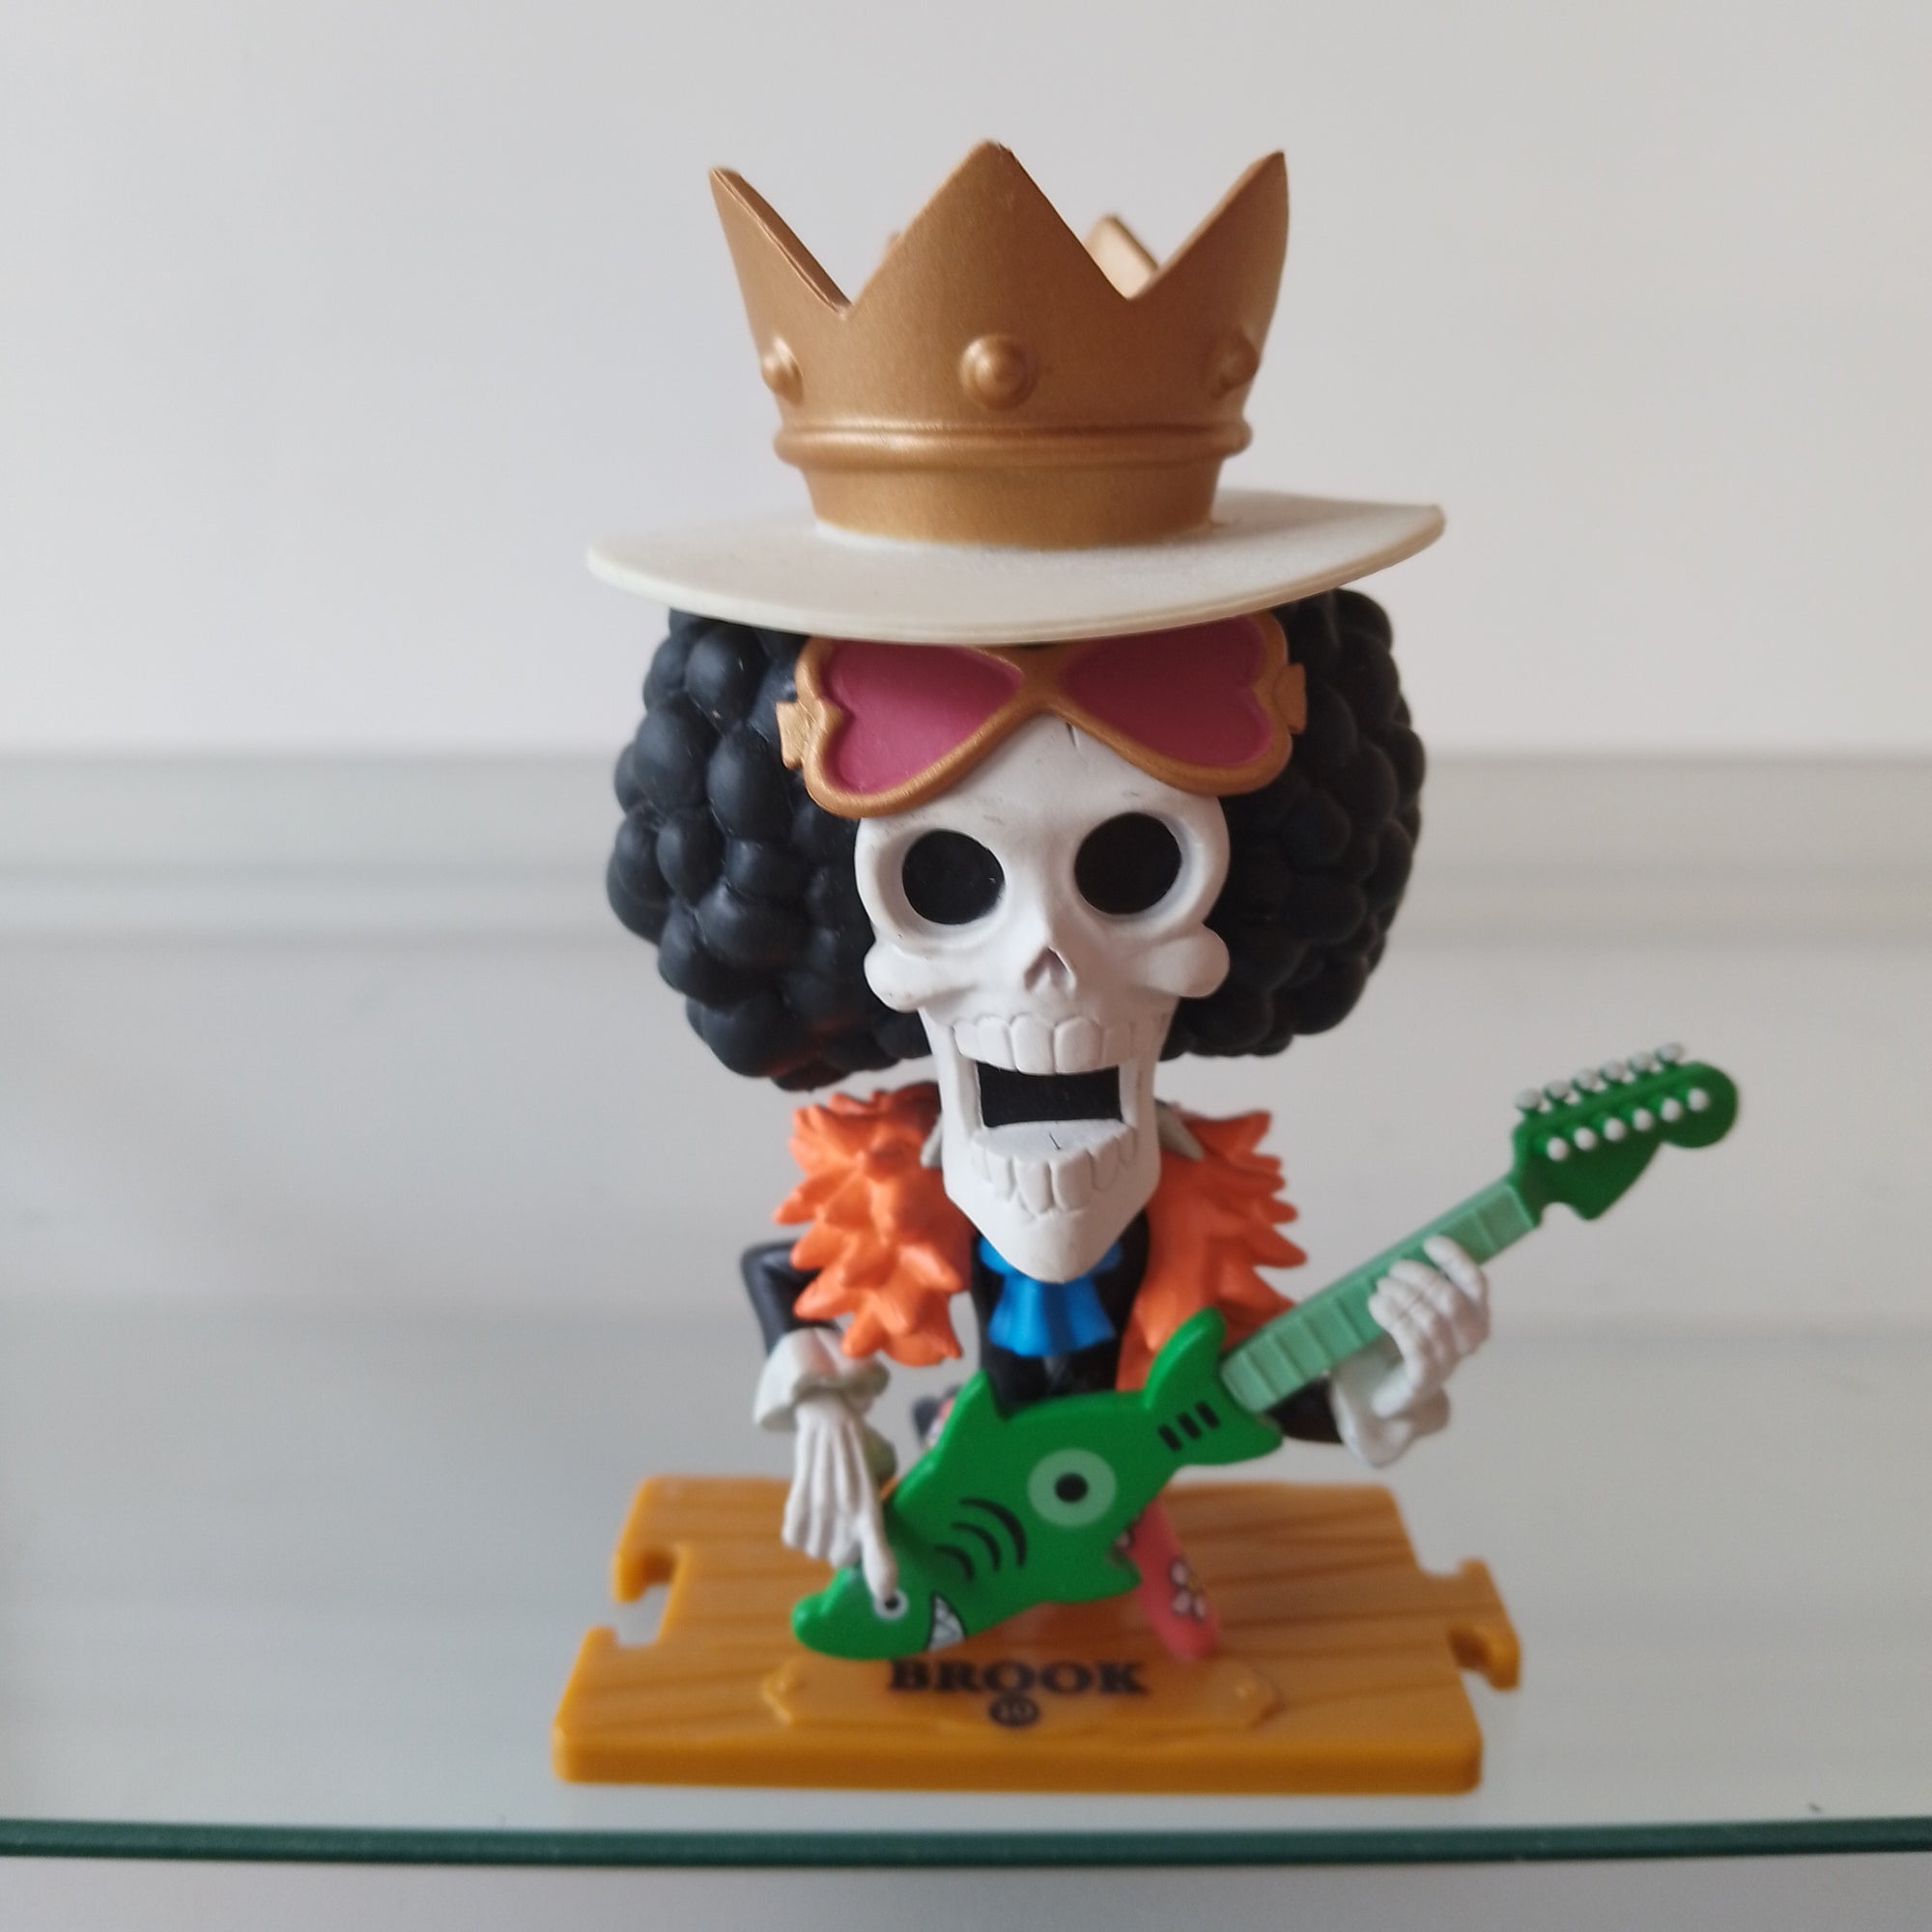 Brook - One Piece Toy Figure